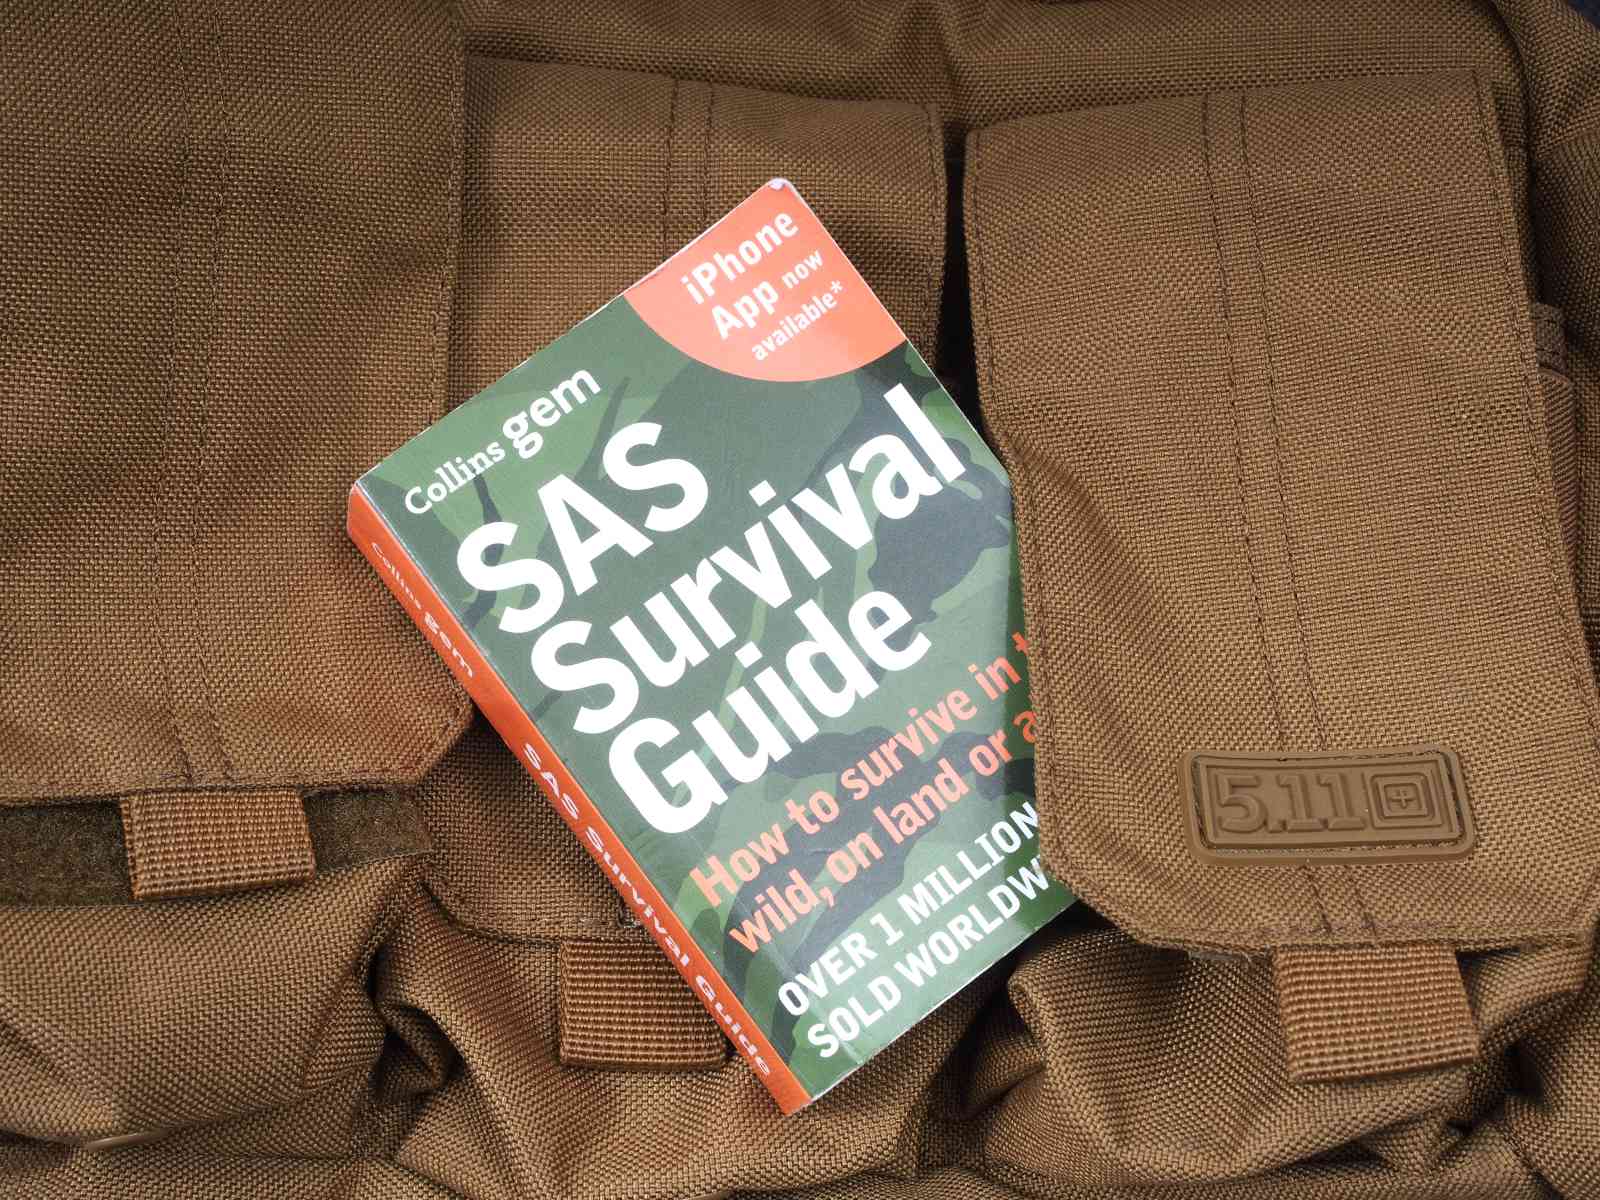 Sas survival guide deutsch - Der Testsieger unserer Produkttester